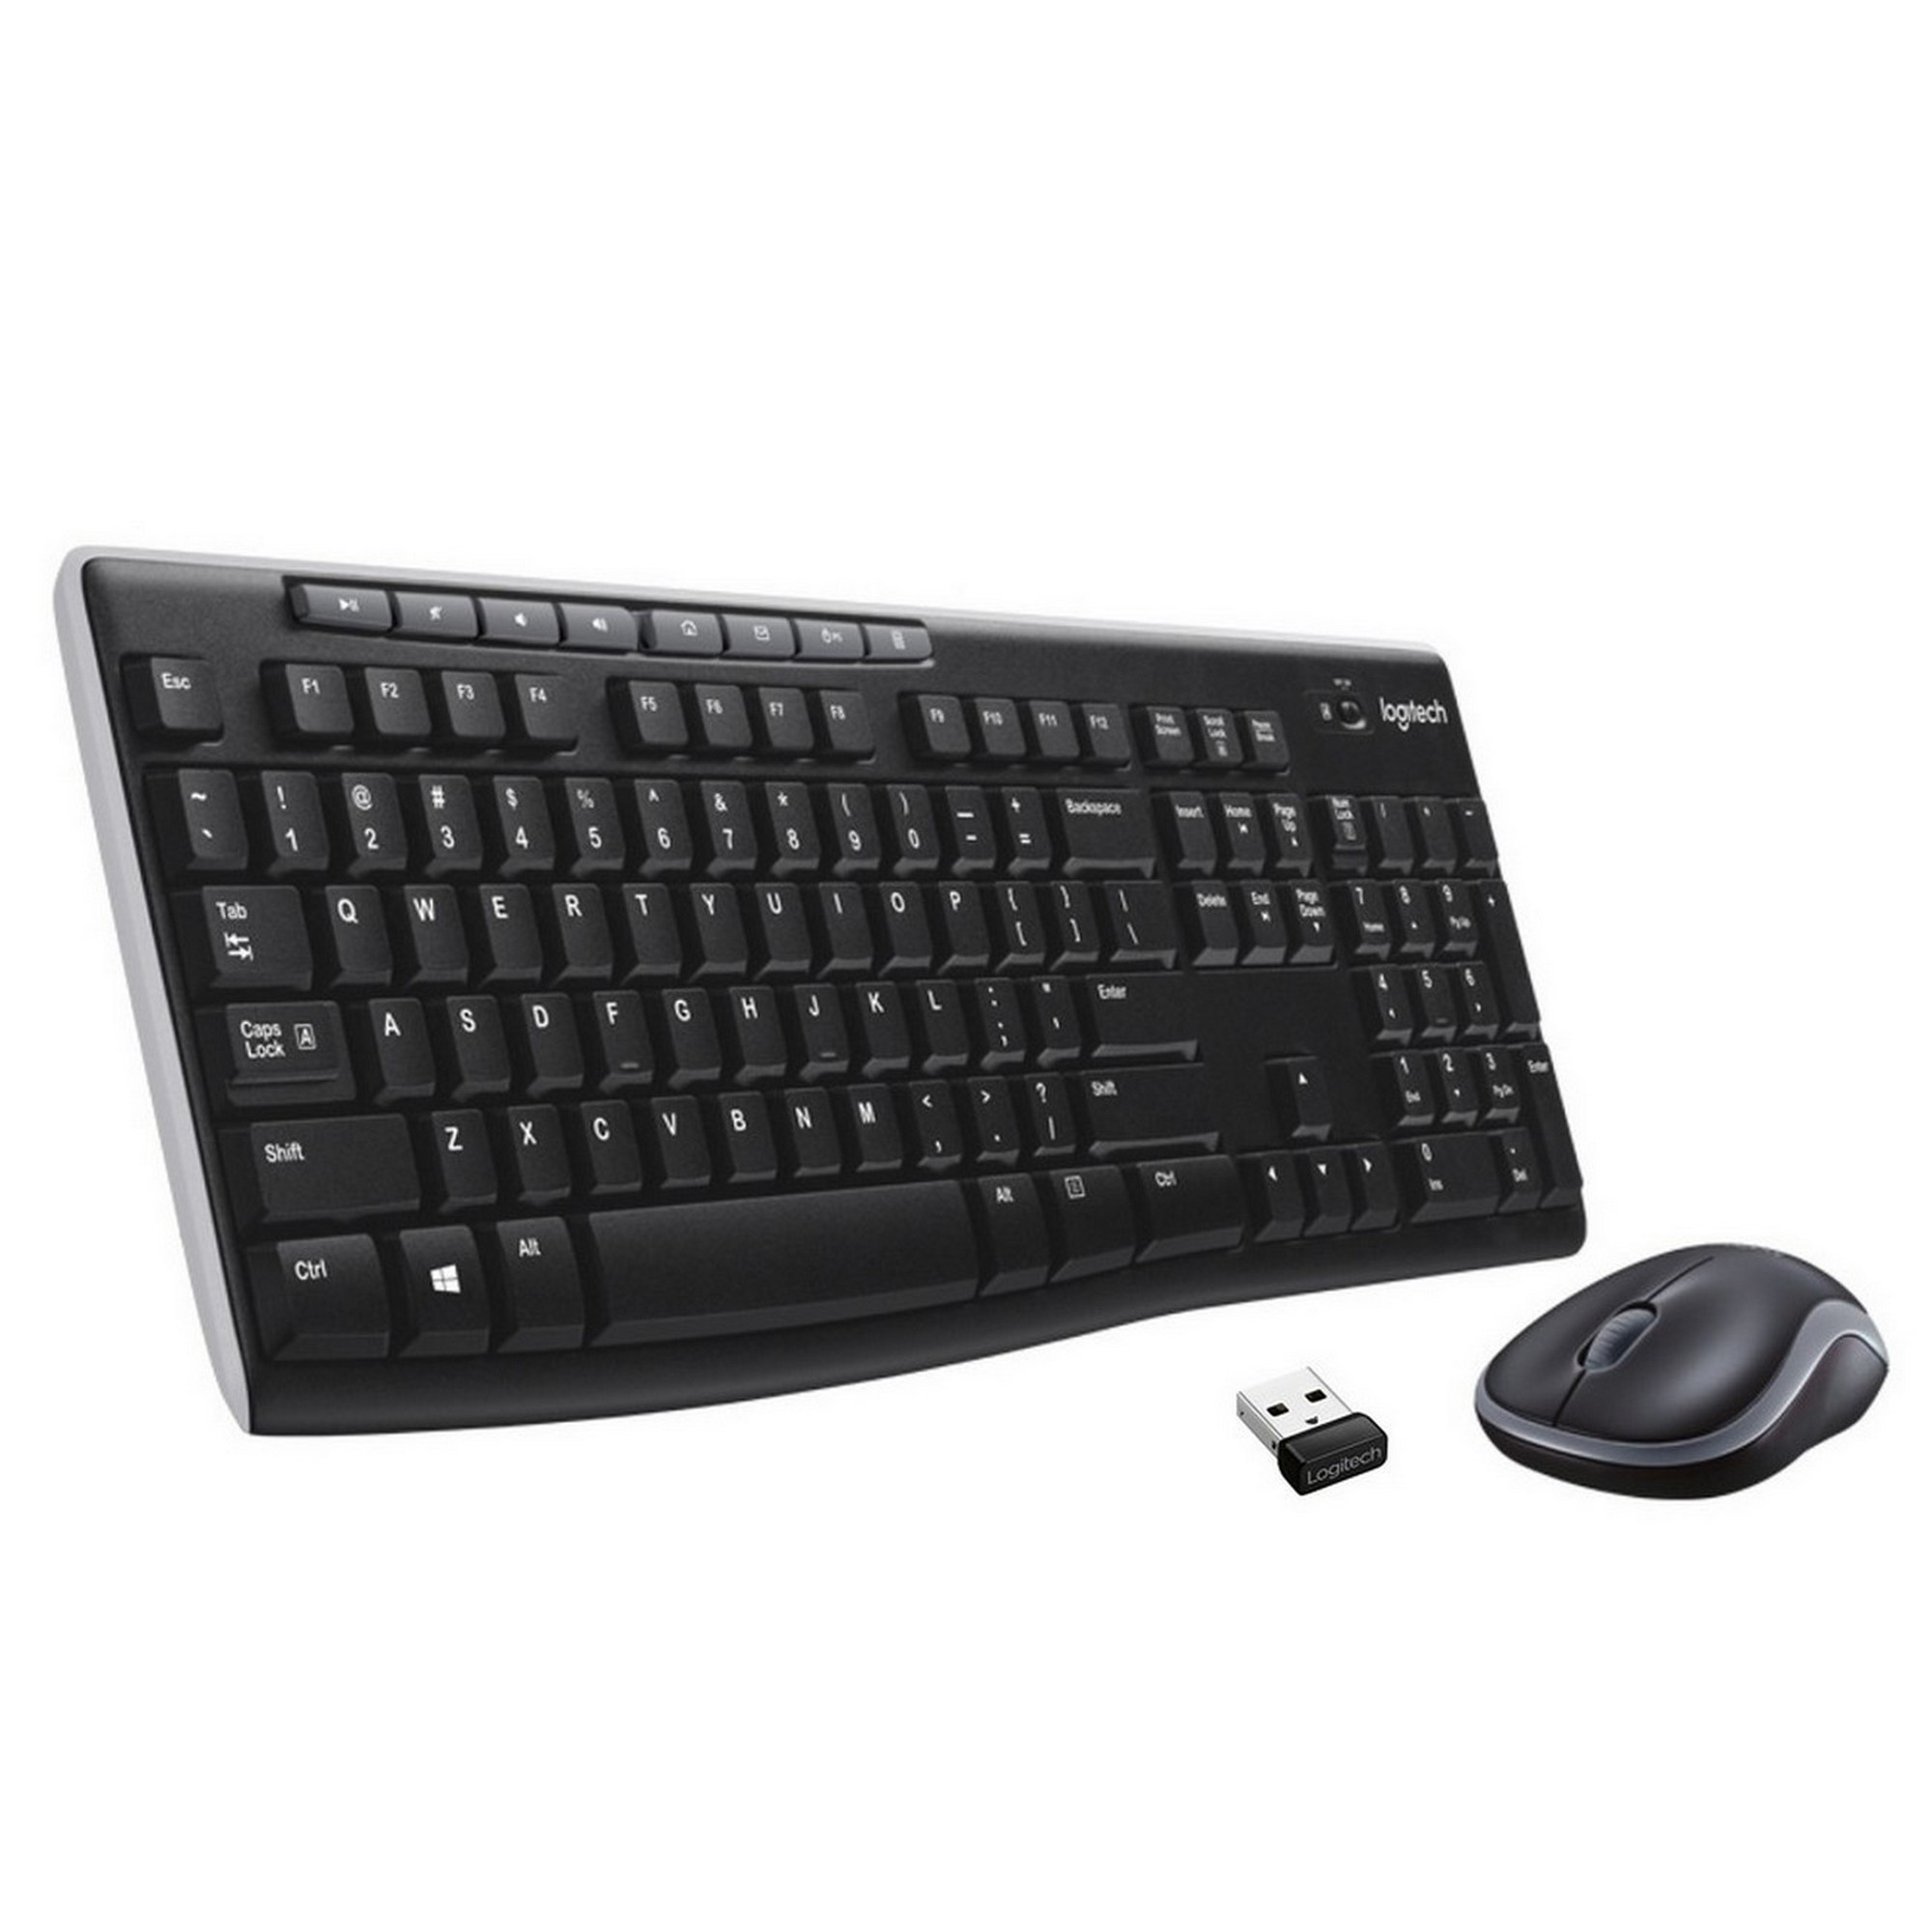 Клавиатура + мышь Logitech MK270 клав:черный мышь:черный USB беспроводная Multimedia